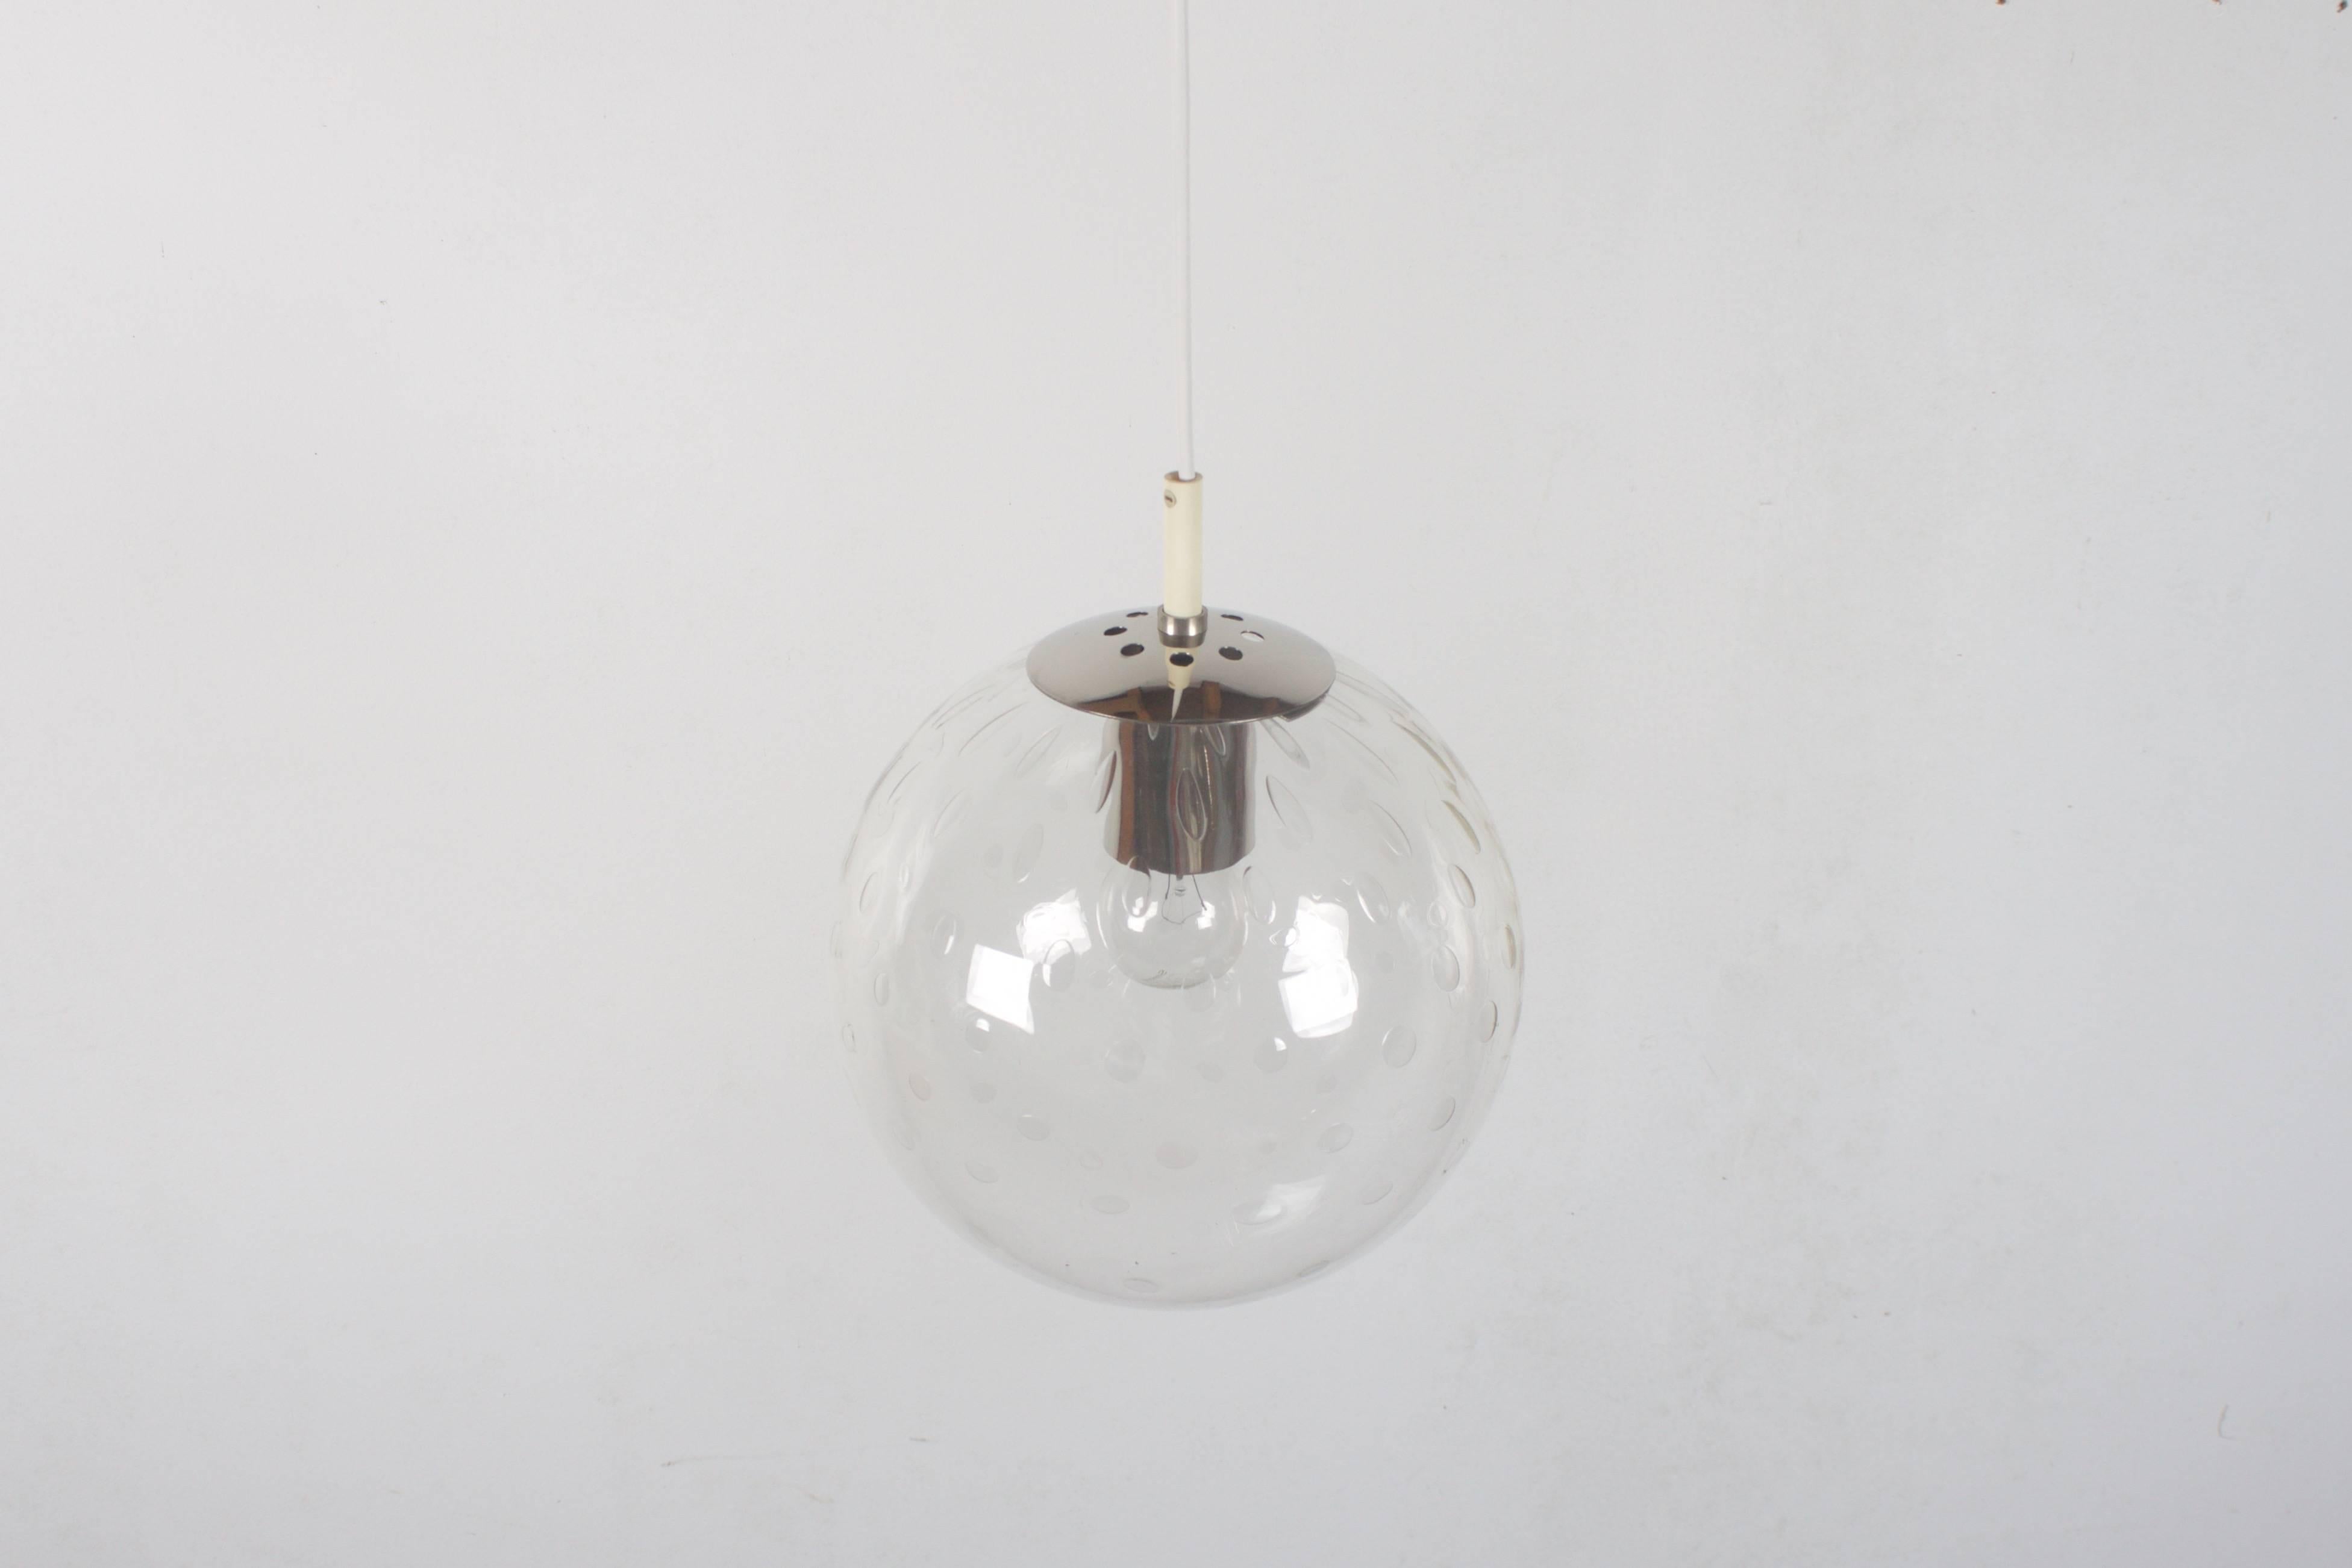 Magnifique pendentif 'Light-drops' de RAAK Amsterdam en très bon état.

Six disponibles. 

Globe en verre soufflé à la main de 25 cm. (Globe de 25 cm avec un motif en forme de goutte d'eau emprisonné à l'intérieur du verre. 

Le motif des globes